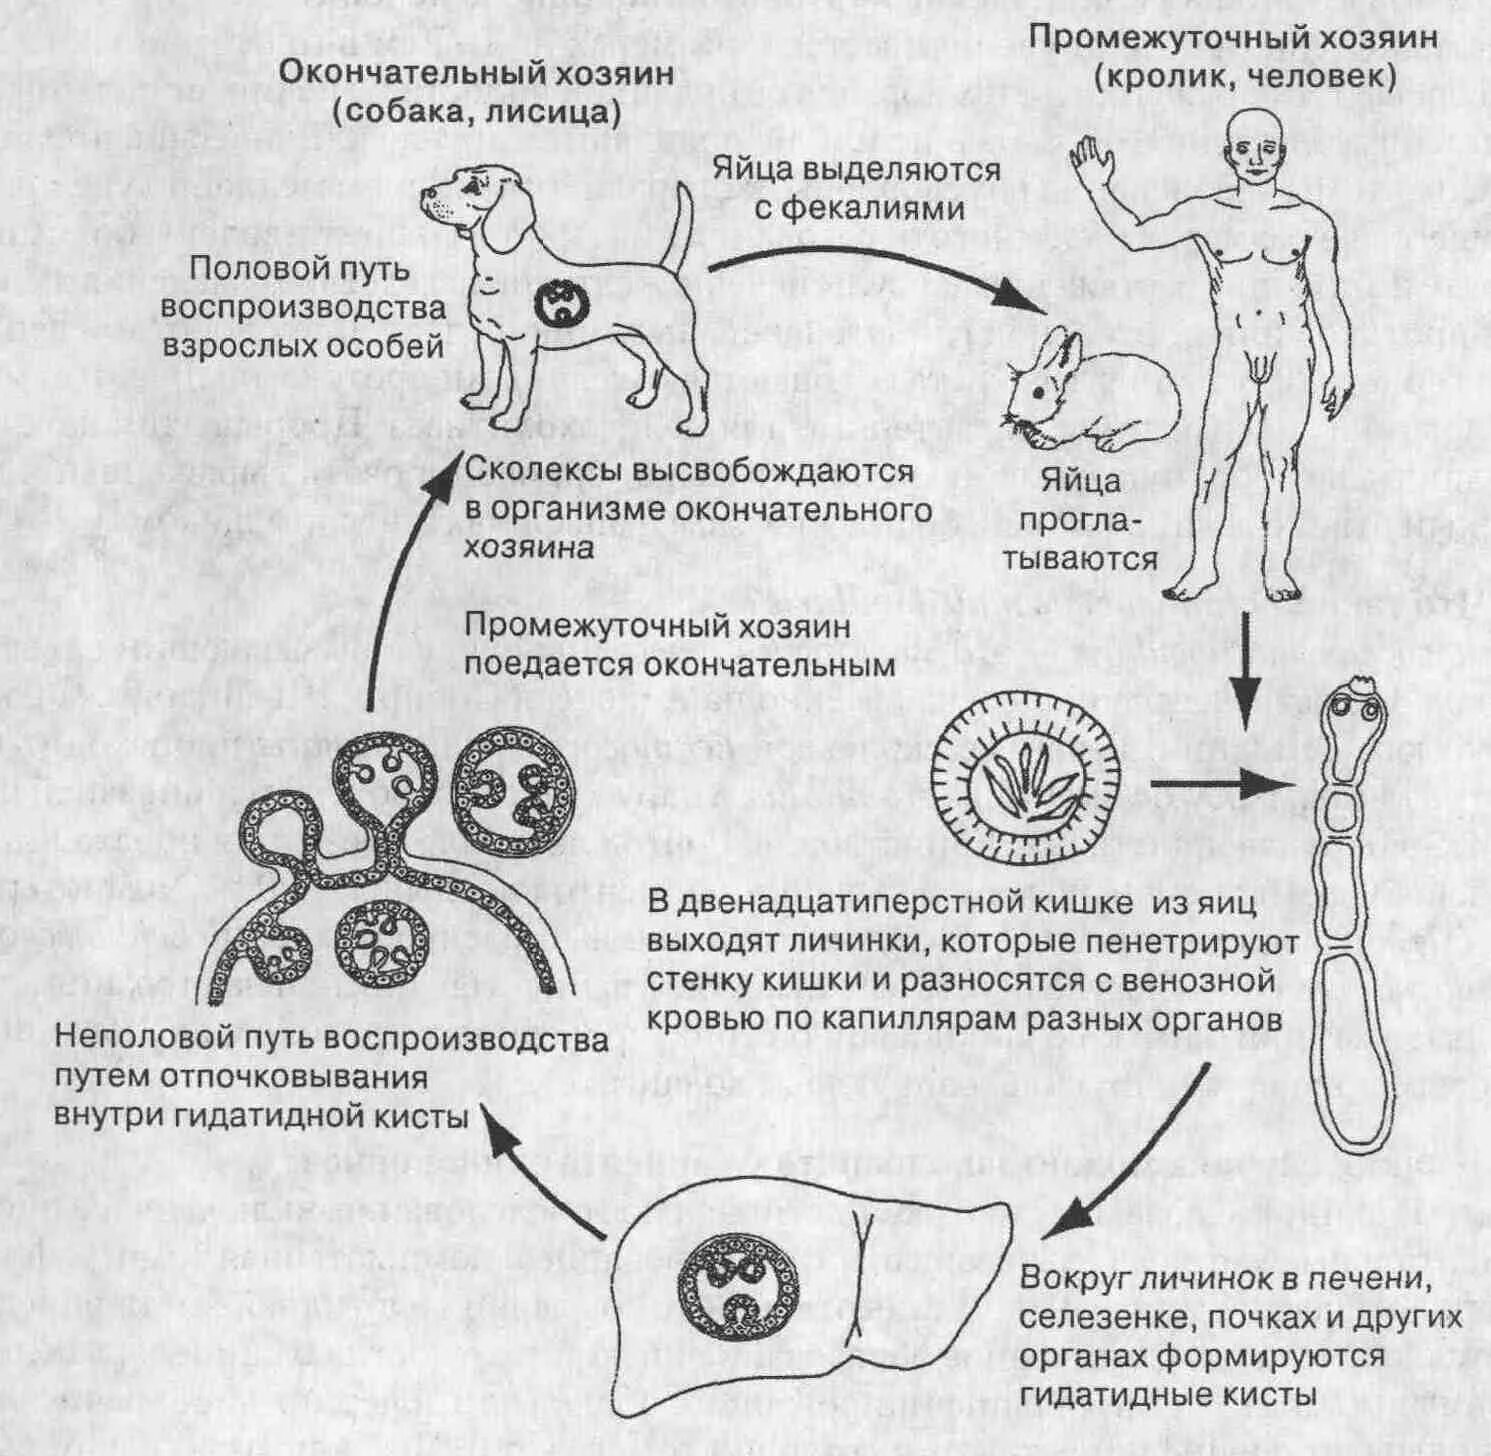 Можно ли считать человека промежуточным хозяином эхинококка. Цикл развития эхинококка Echinococcus granulosus. Эхинококк Echinococcus granulosus жизненный цикл. Эхинококкоз цикл развития схема. Цикл развития Echinococcus granulosus.